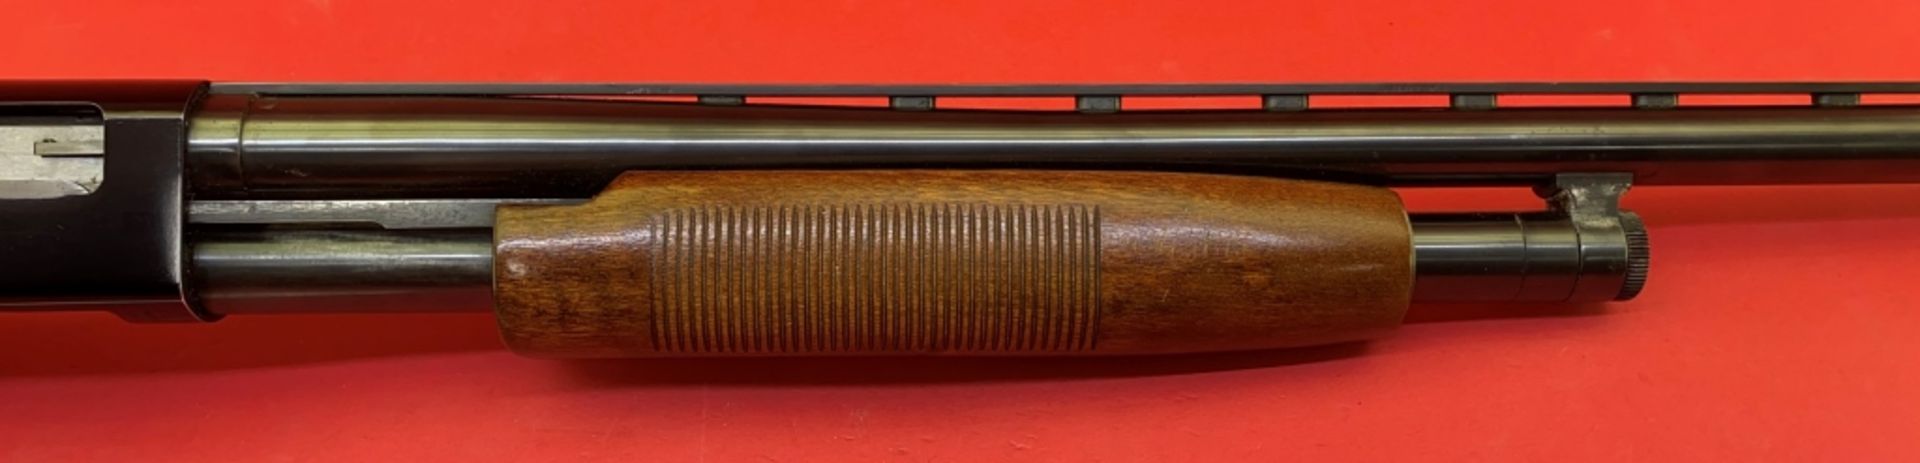 Mossberg 500AT 12 ga 3"" Shotgun - Image 4 of 12